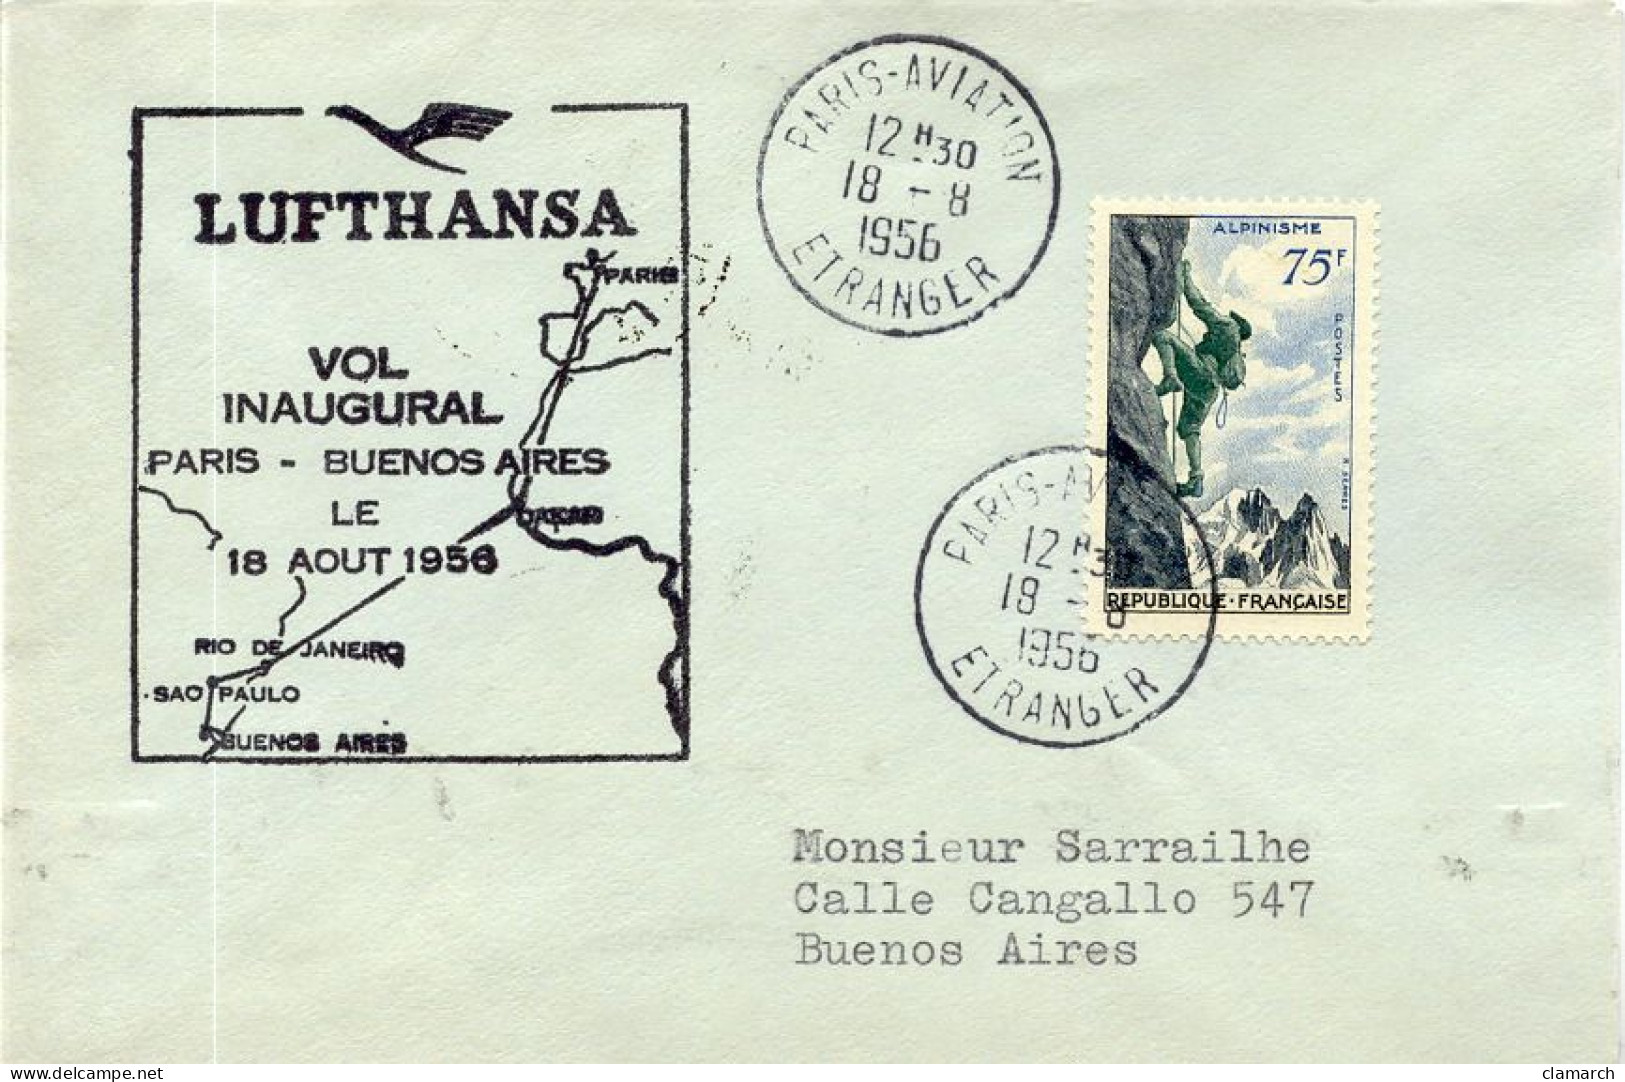 Aérophilatélie-Vol Inaugural Par Lufthansa PARIS-BUENOS AIRES Le 8 Aout 1956-cachet De Paris Du 18.08.56 - Primeros Vuelos